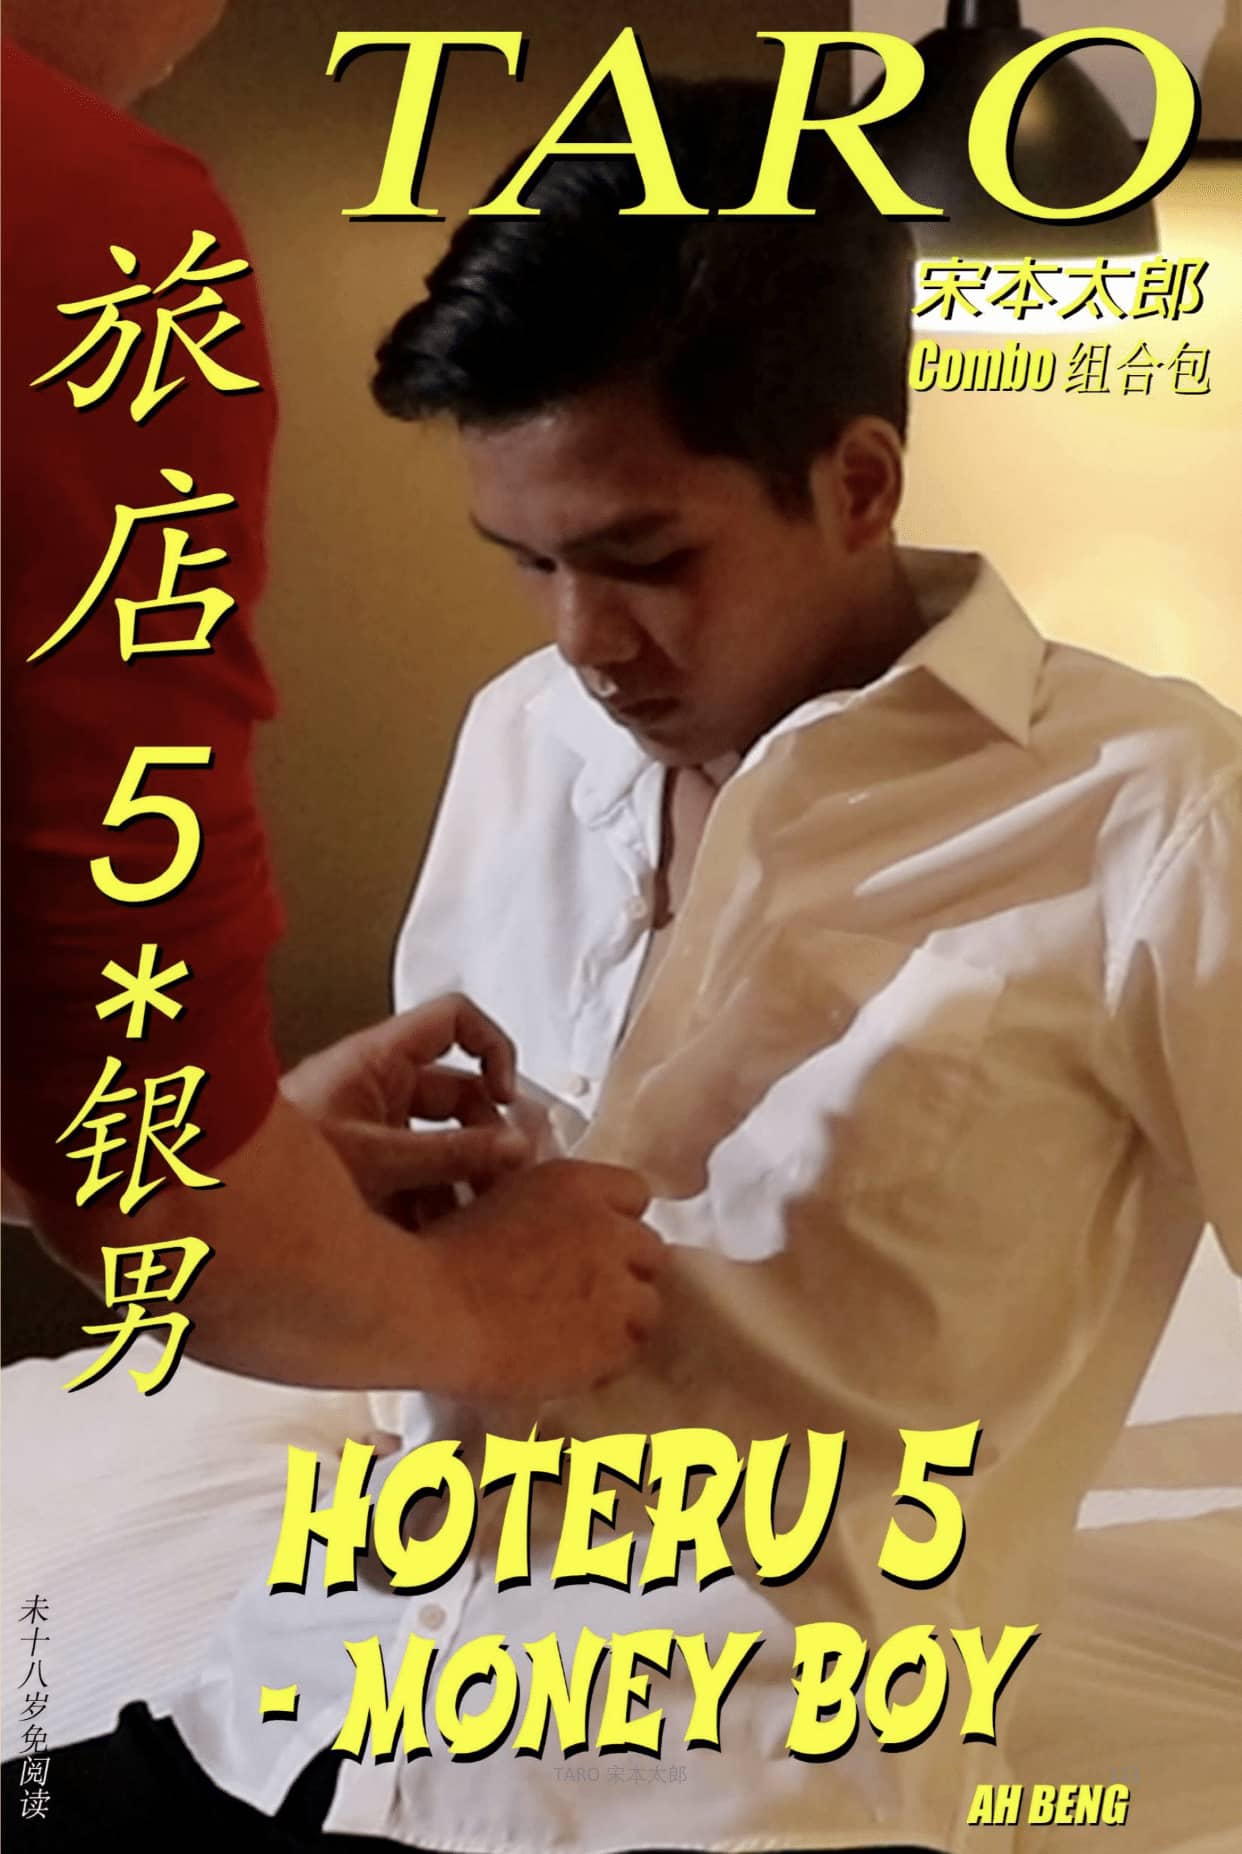 HOTERU 5 – MONEY BOY 旅店 5 – 银男 Book No. 59 + Video No. 64 Part 1 & Part 2